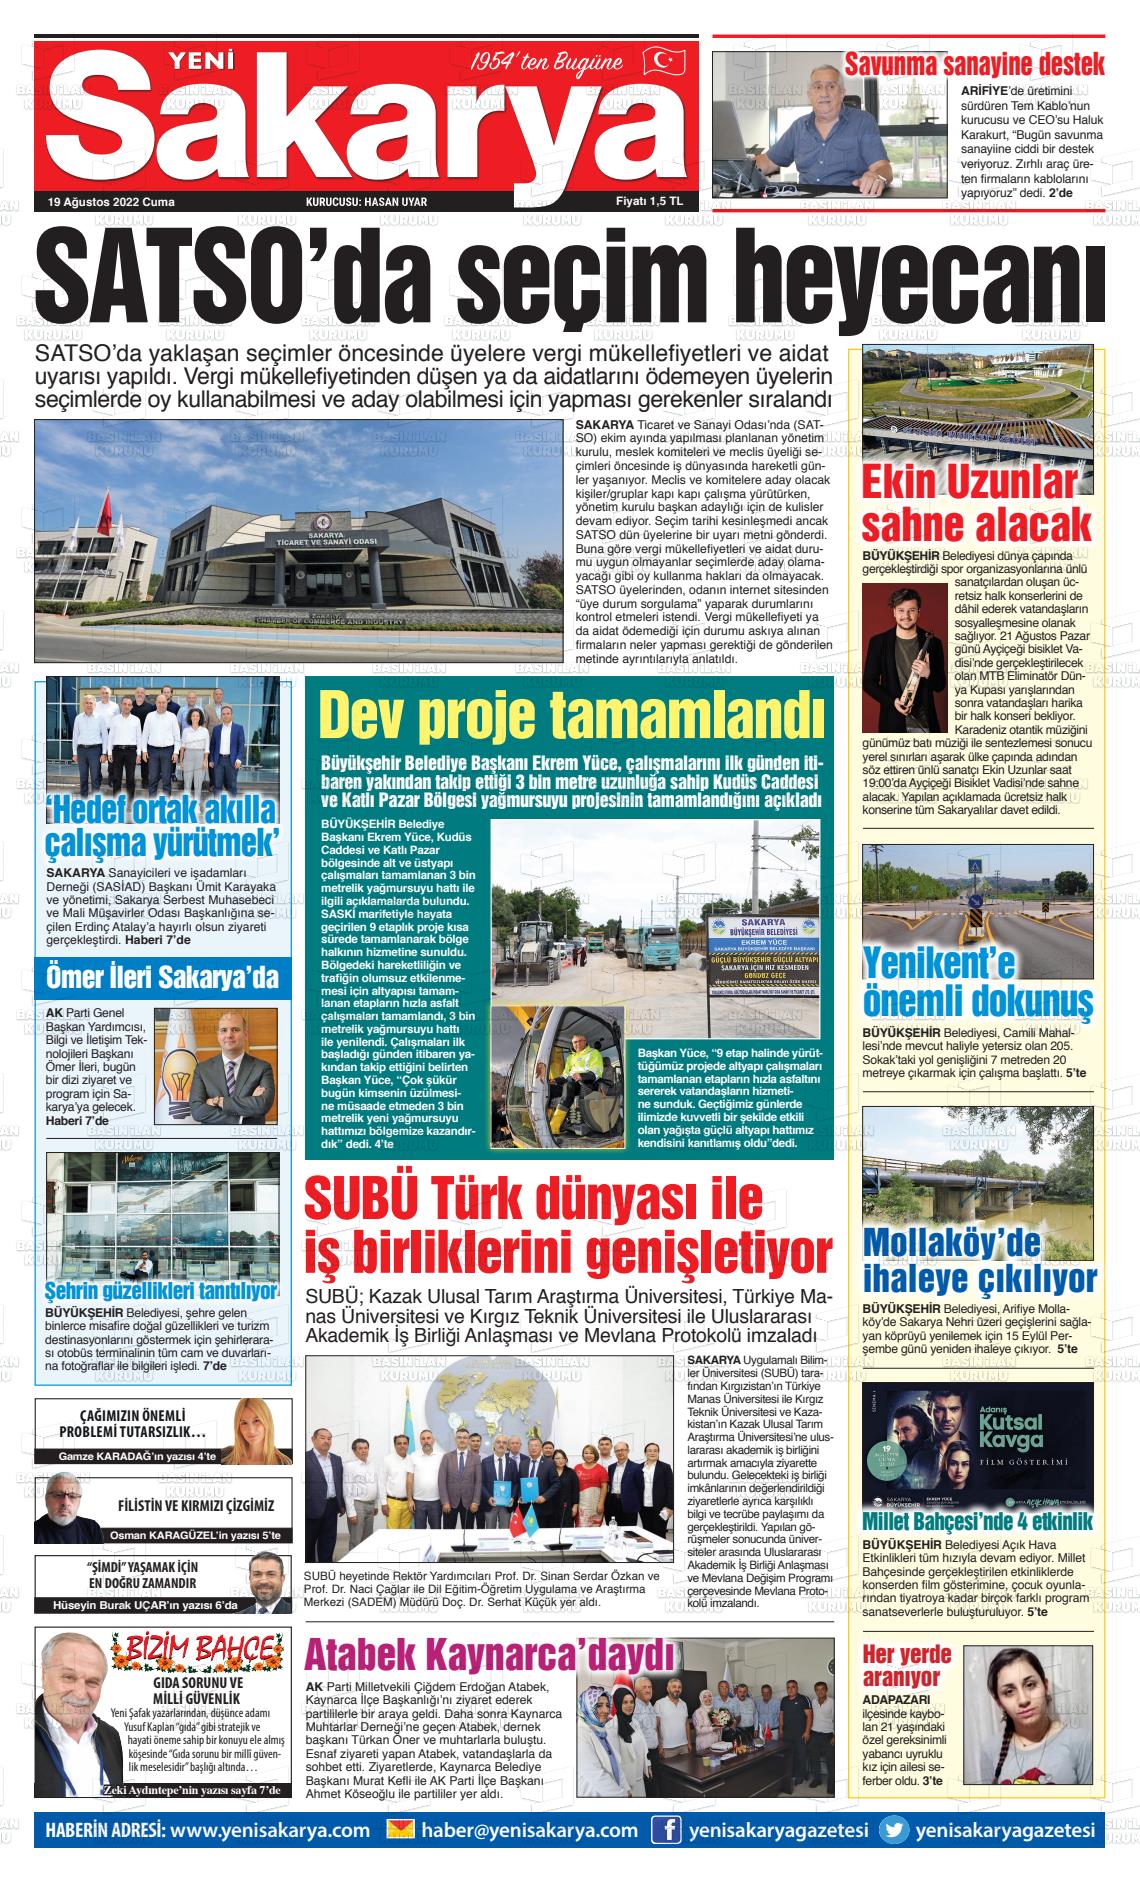 19 Ağustos 2022 Yeni Sakarya Gazete Manşeti